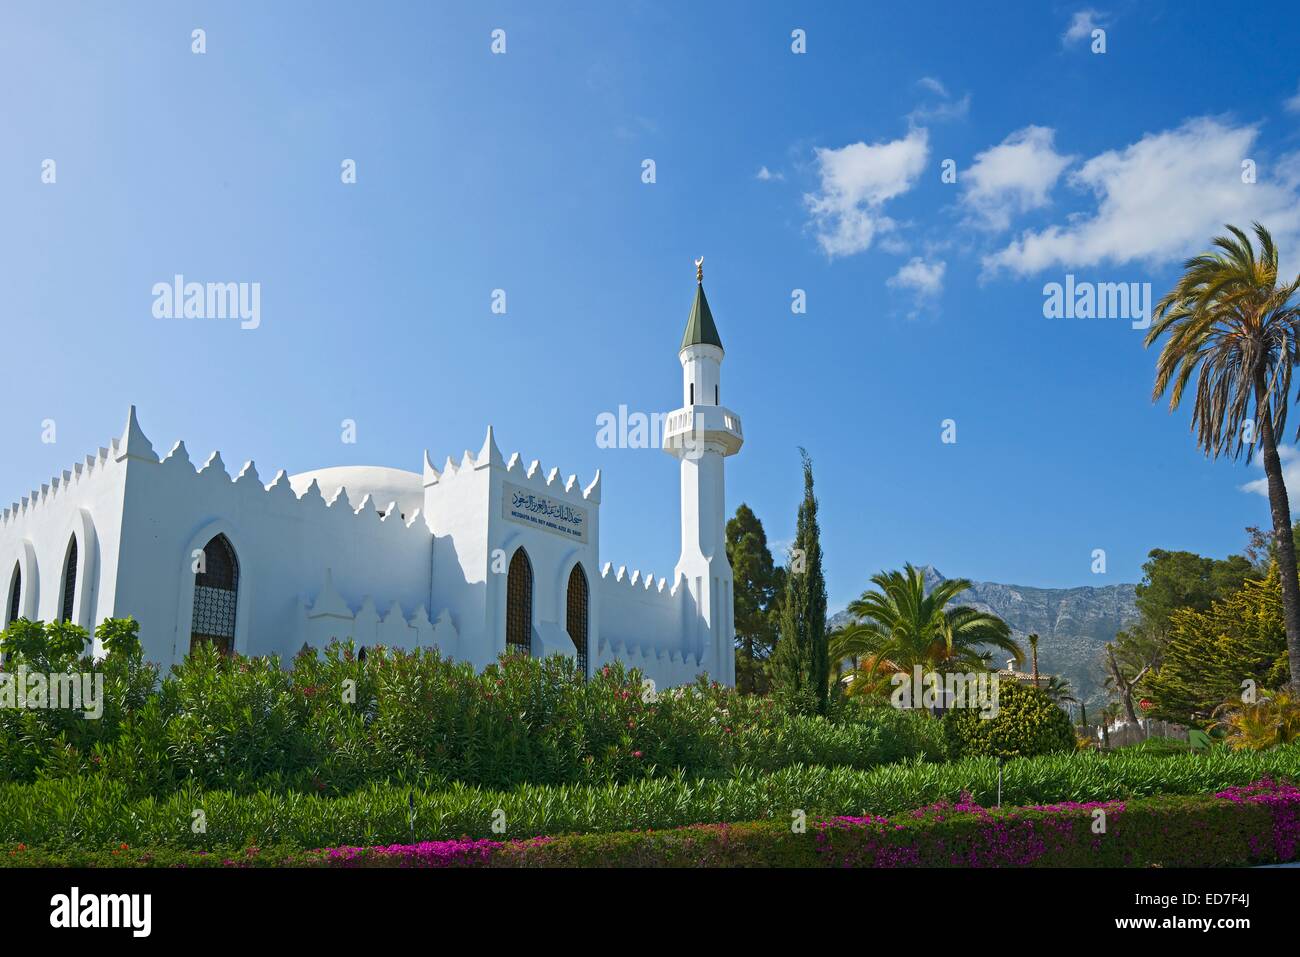 Abdul Aziz Al Saud mosque, Marbella, Costa del Sol, Andalucia, Spain Stock Photo